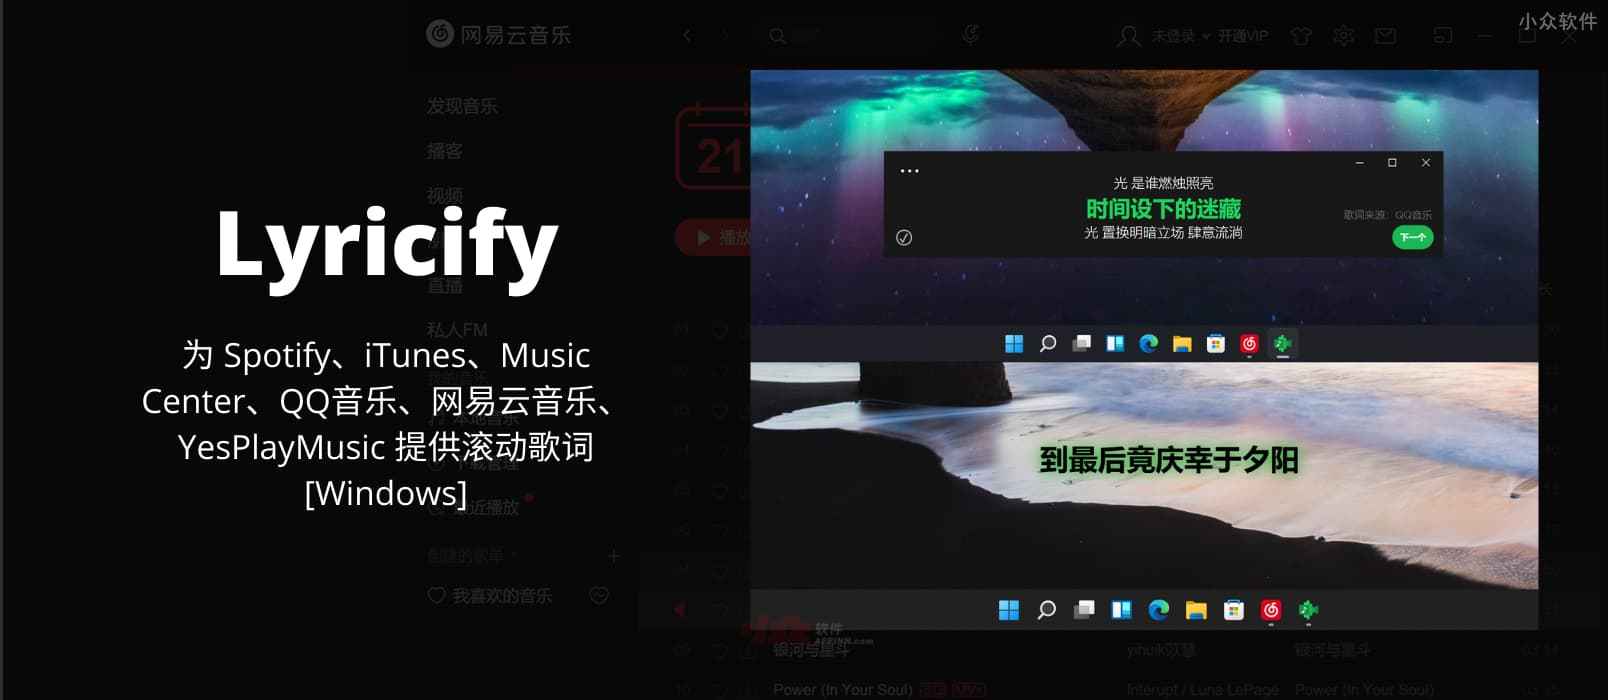 Lyricify - 为 Spotify、iTunes、Music Center、QQ音乐、网易云音乐、YesPlayMusic 提供滚动歌词[Windows]